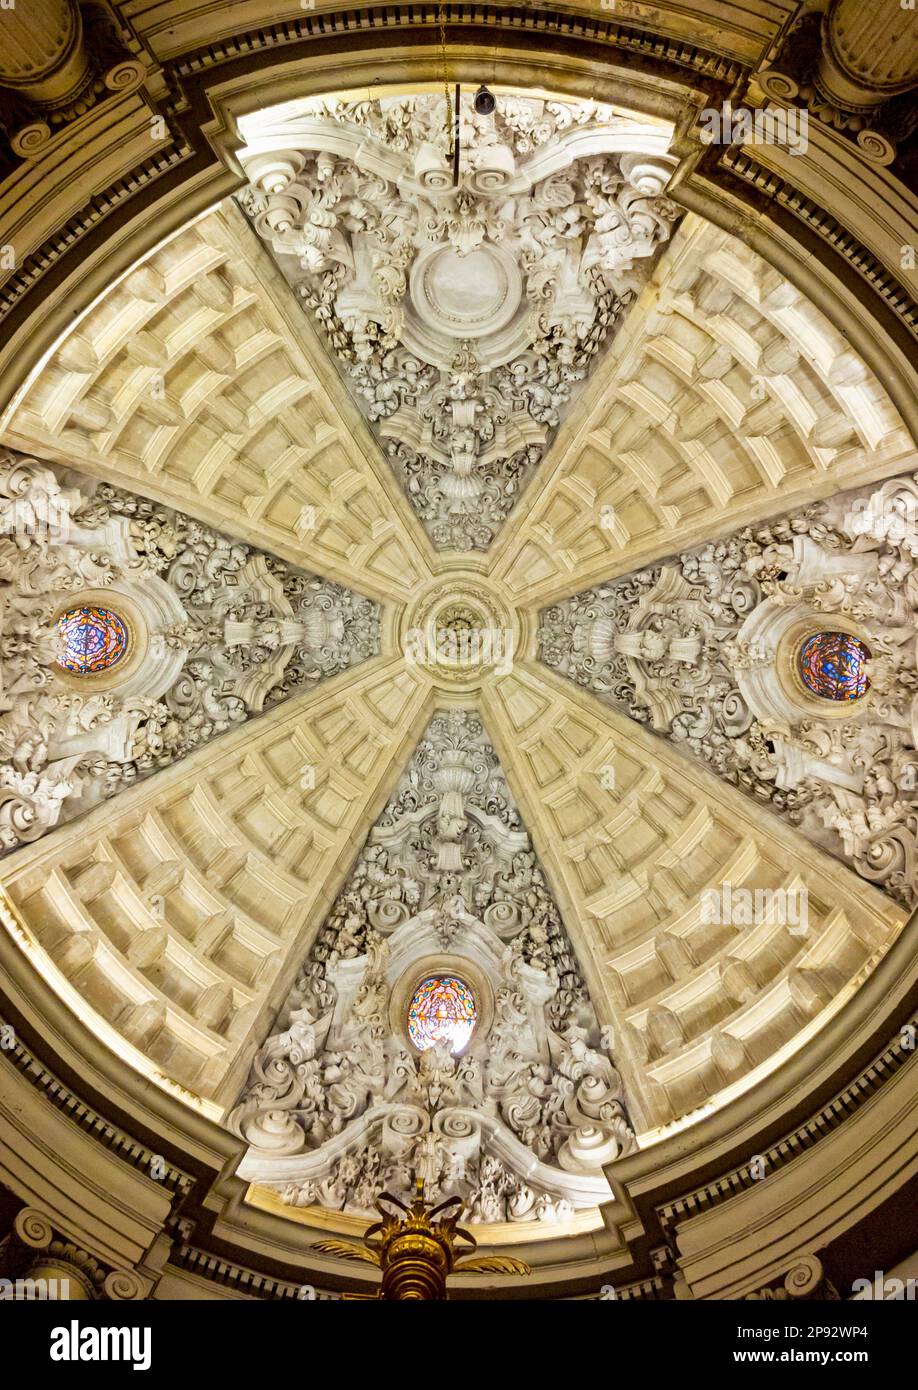 Plafond de la cathédrale de Guadix ou de la cathédrale de l'Incarnation Catedral de la Encarnación de Guadix une église catholique baroque en Andalousie. Banque D'Images